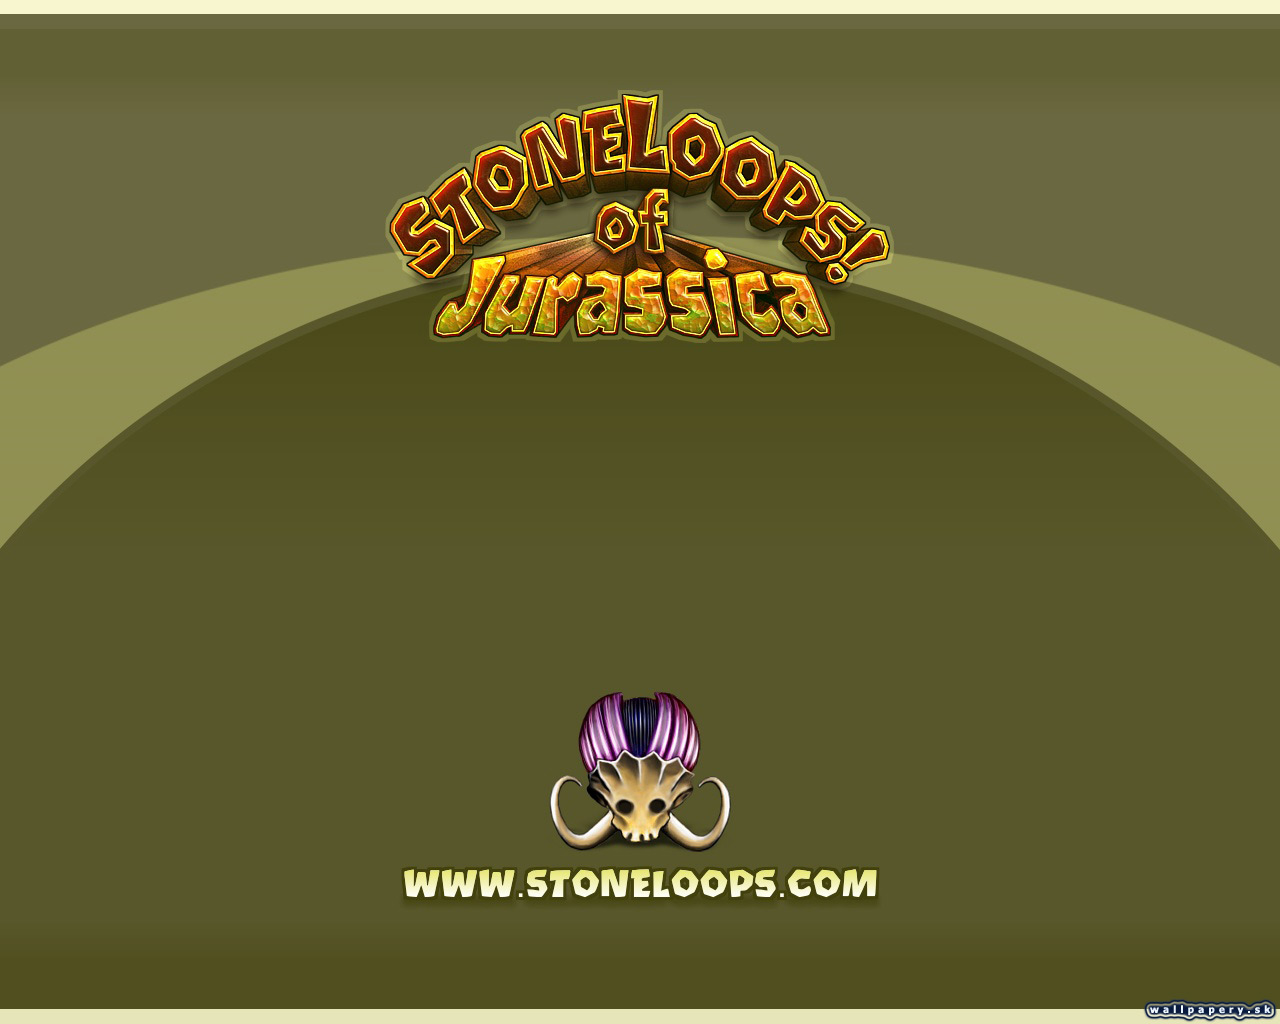 StoneLoops! of Jurassica - wallpaper 4